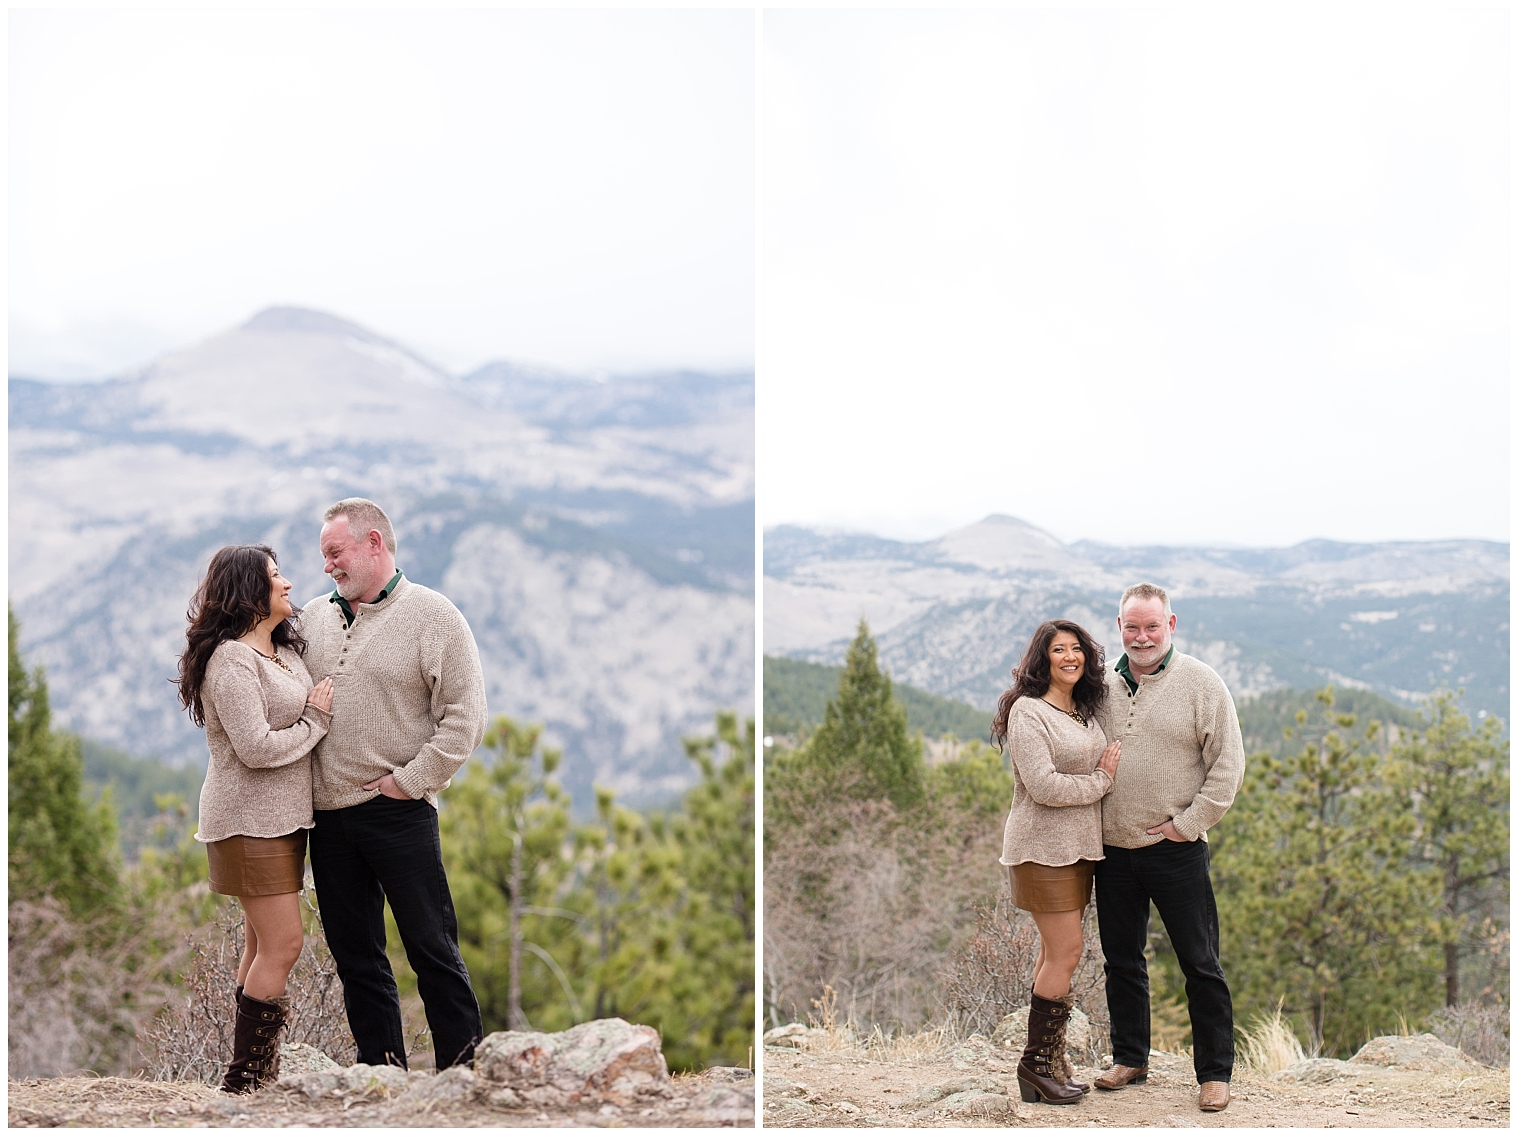 Couple gets engagement photos taken on mountaintop in Breckenridge Colorado.